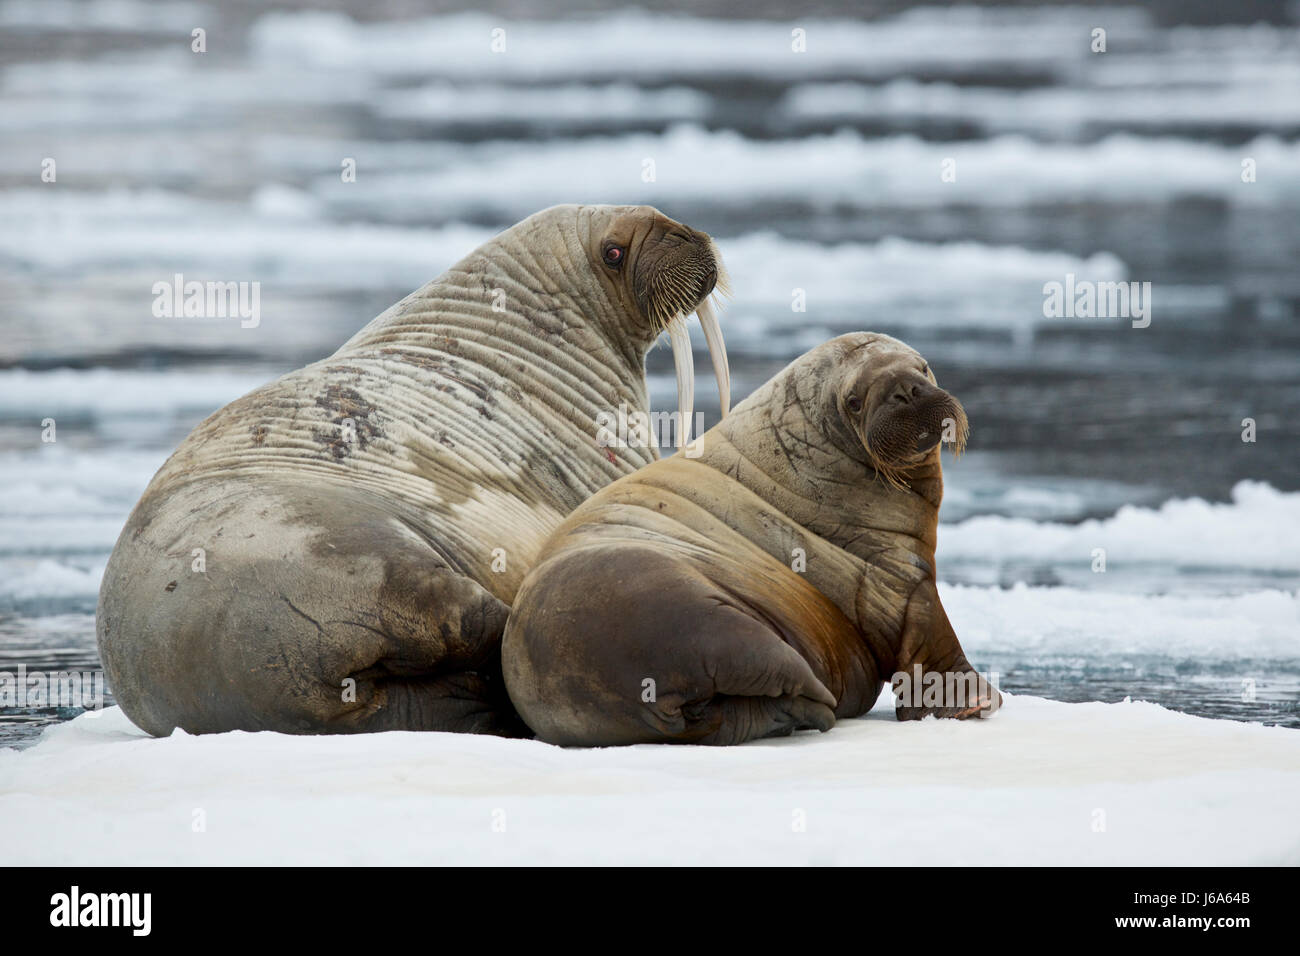 walrus, Odobenus rosmarus rosmarus Stock Photo